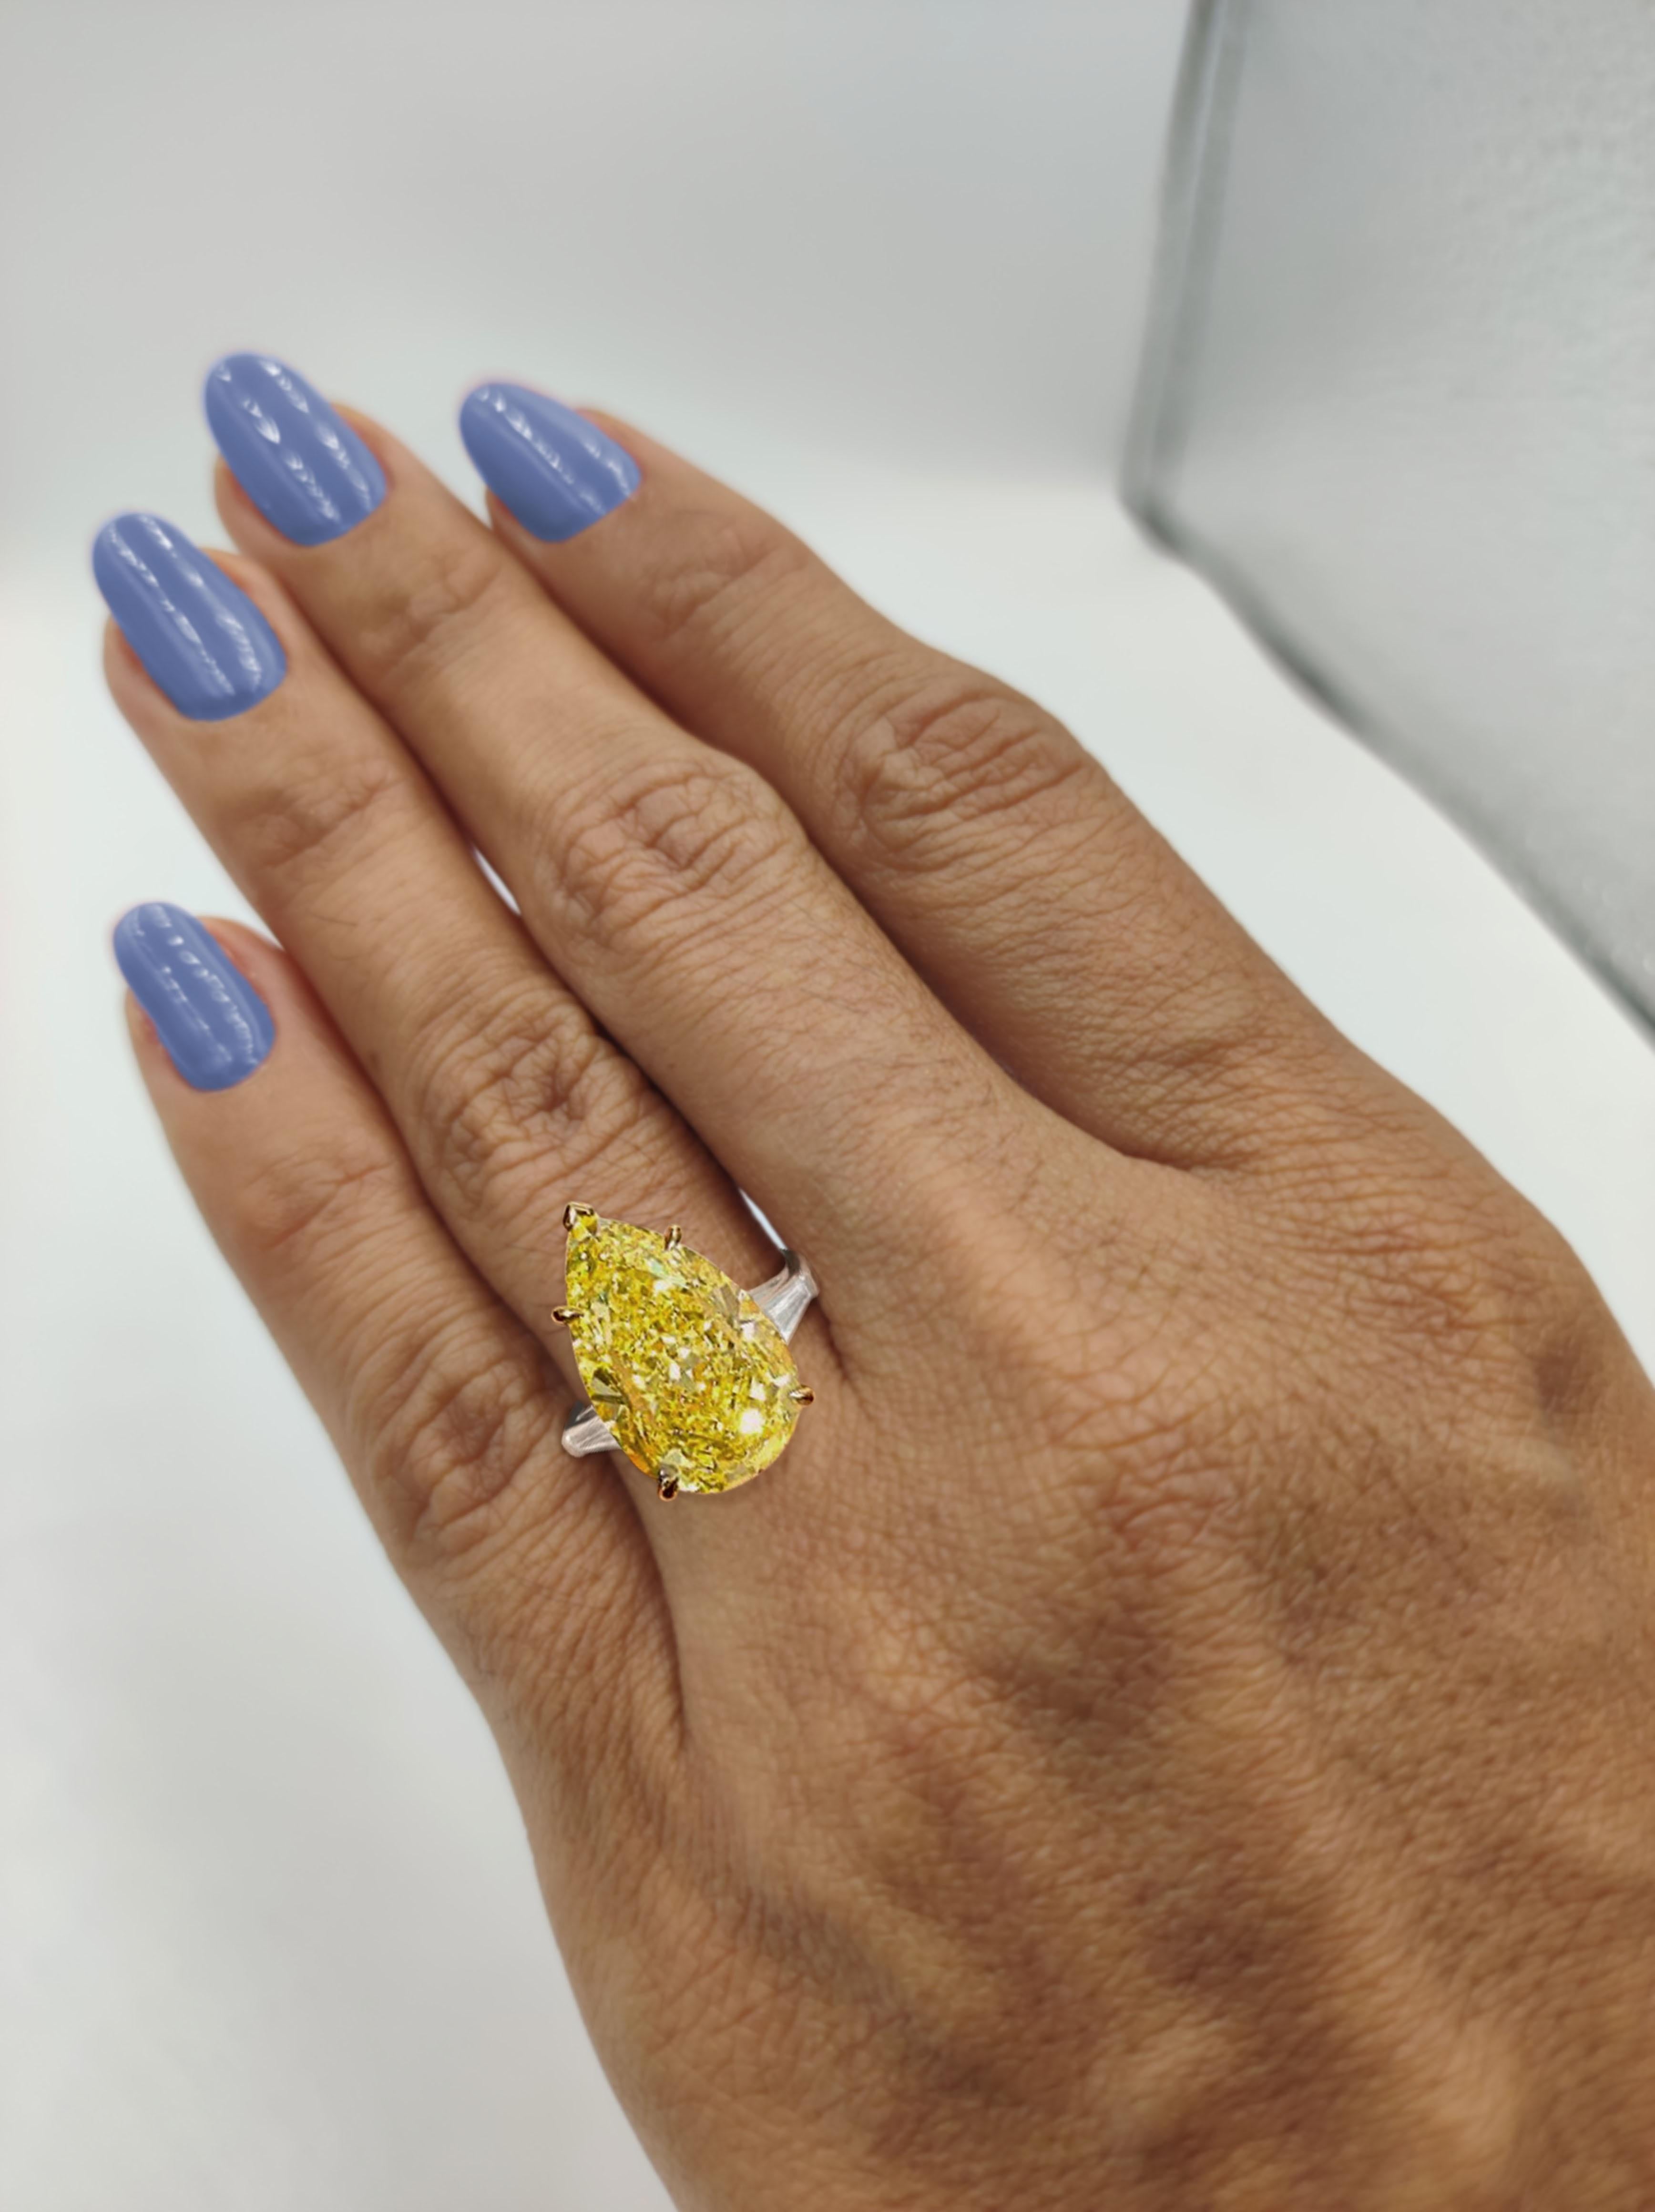 Magnifique diamant jaune intense (qui semble être de couleur vive dans la bague) avec un double halo de diamants blancs, certifié GIA. Haute joaillerie par Antinori di Sanpietro ROMA
Poids total des diamants : 8,25 carats.
Diamant de forme conique